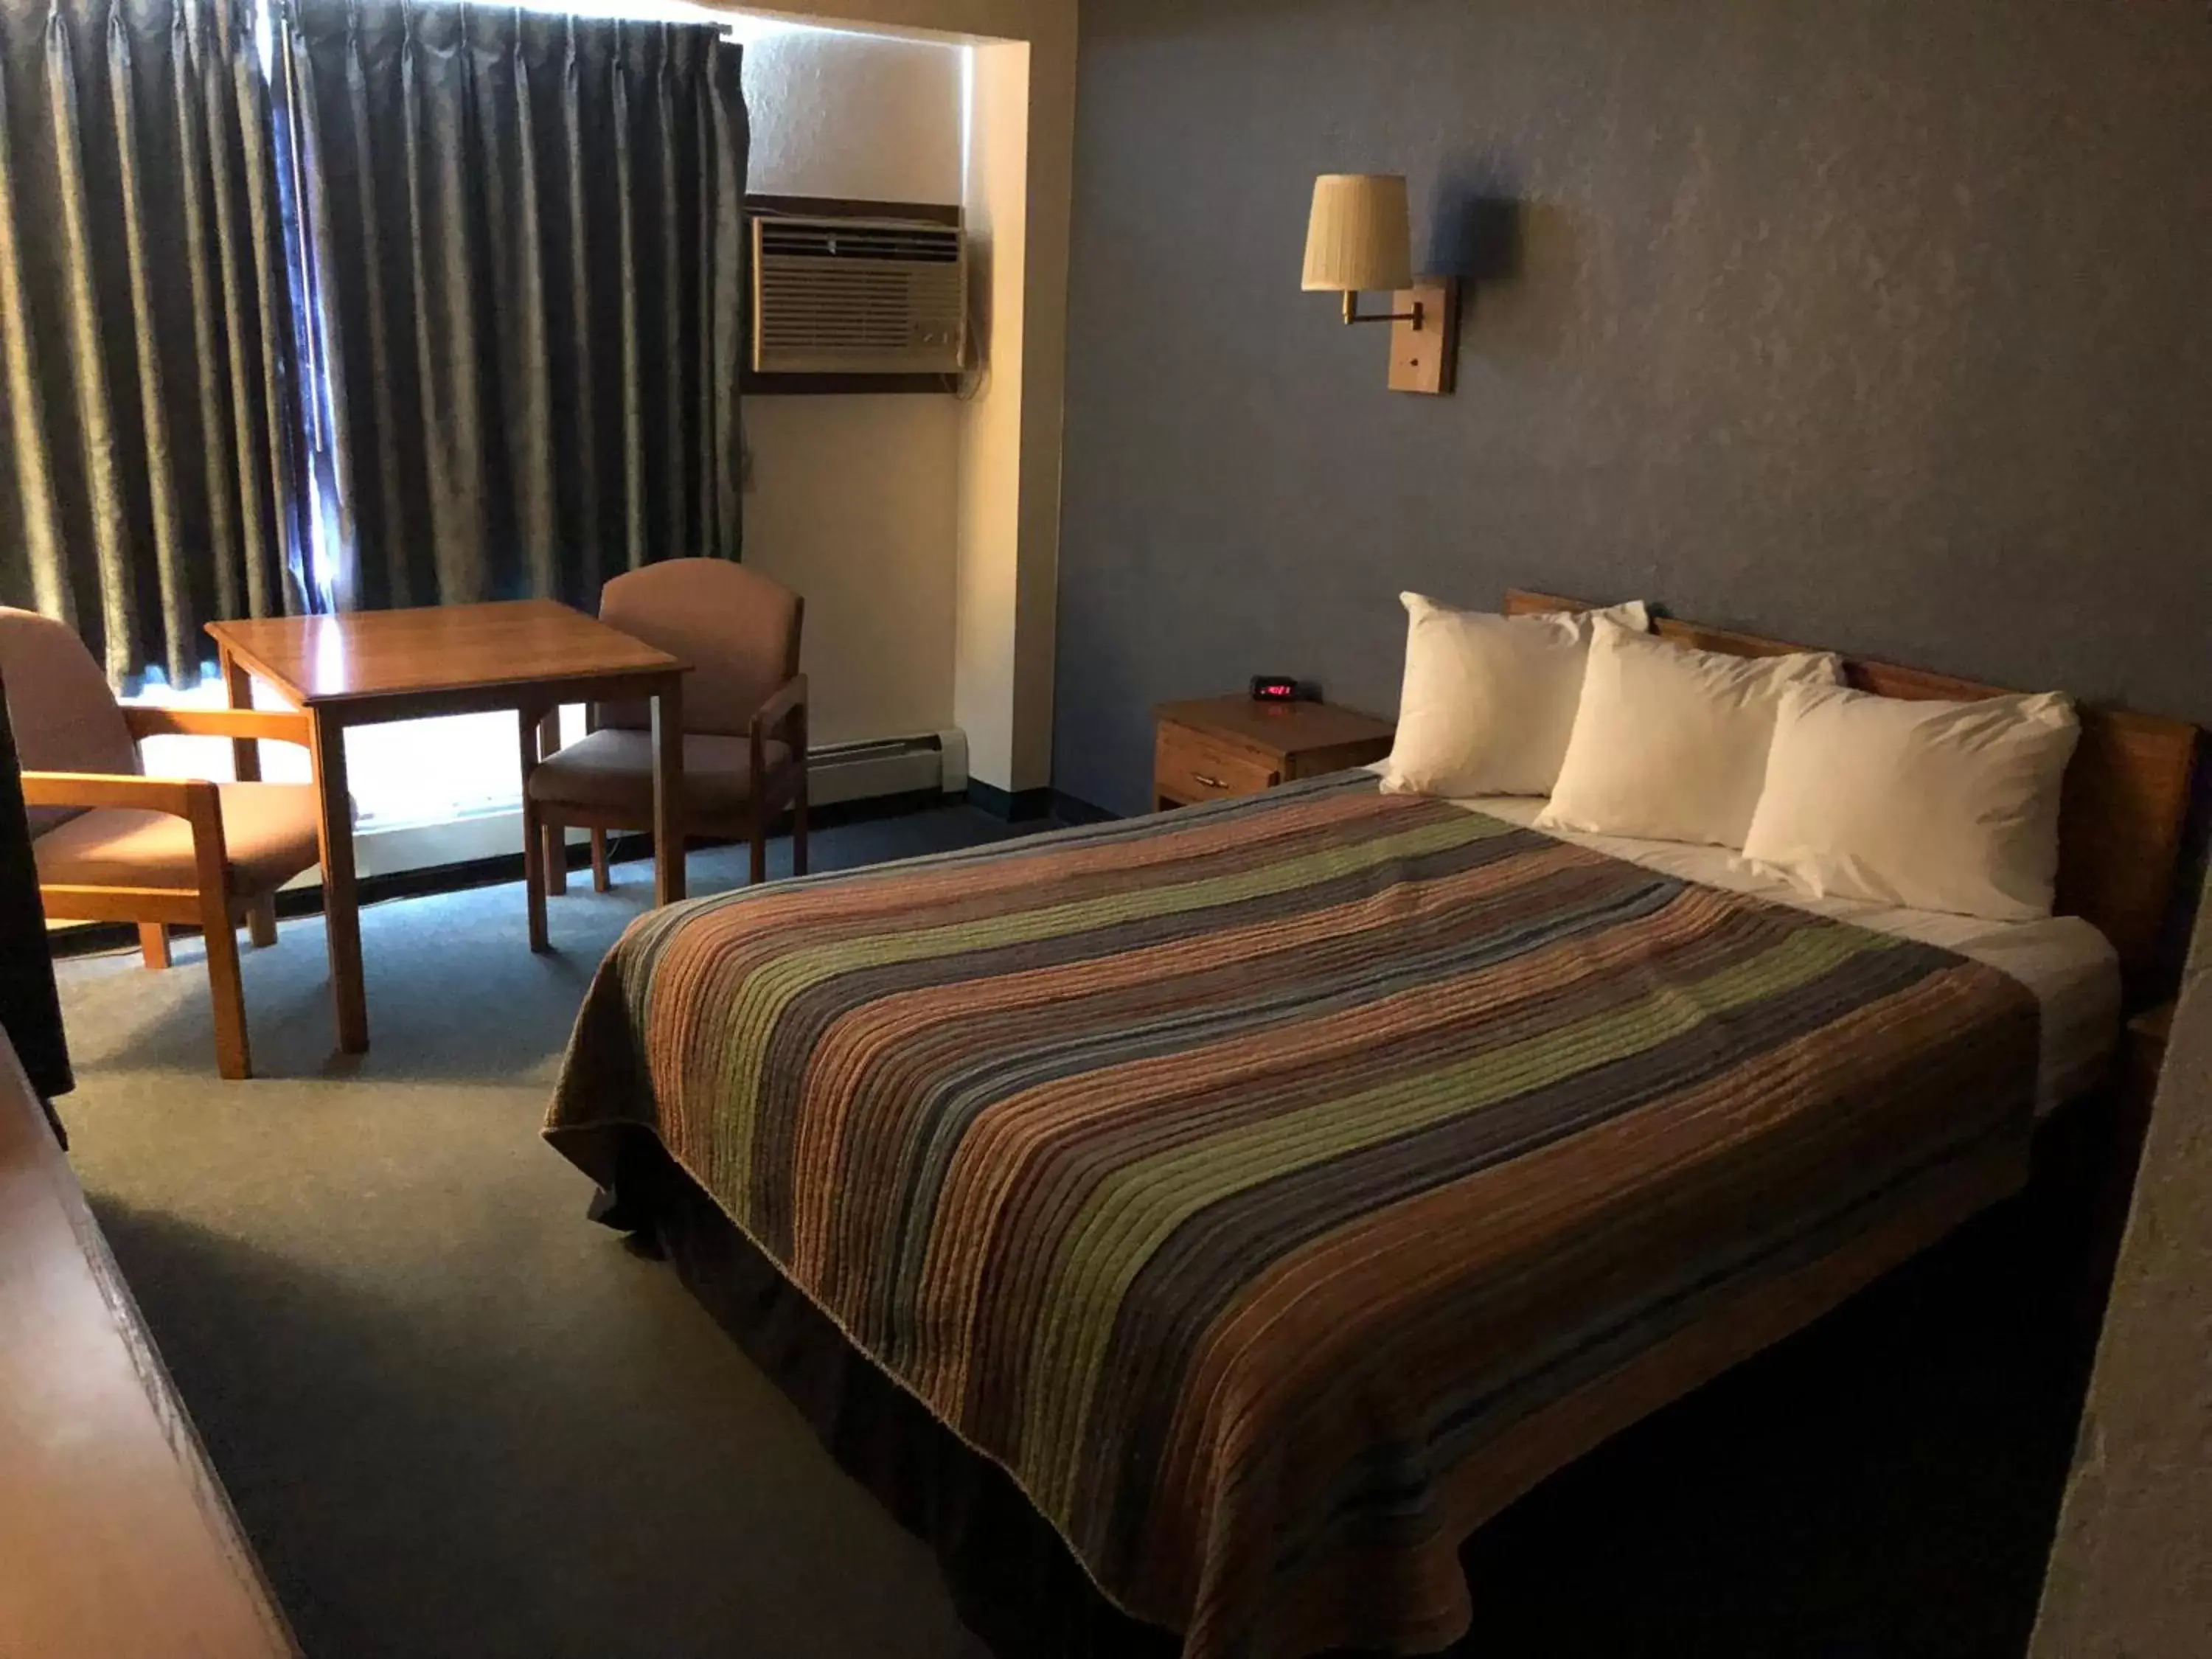 Bed in AmericInn Motel - Monticello